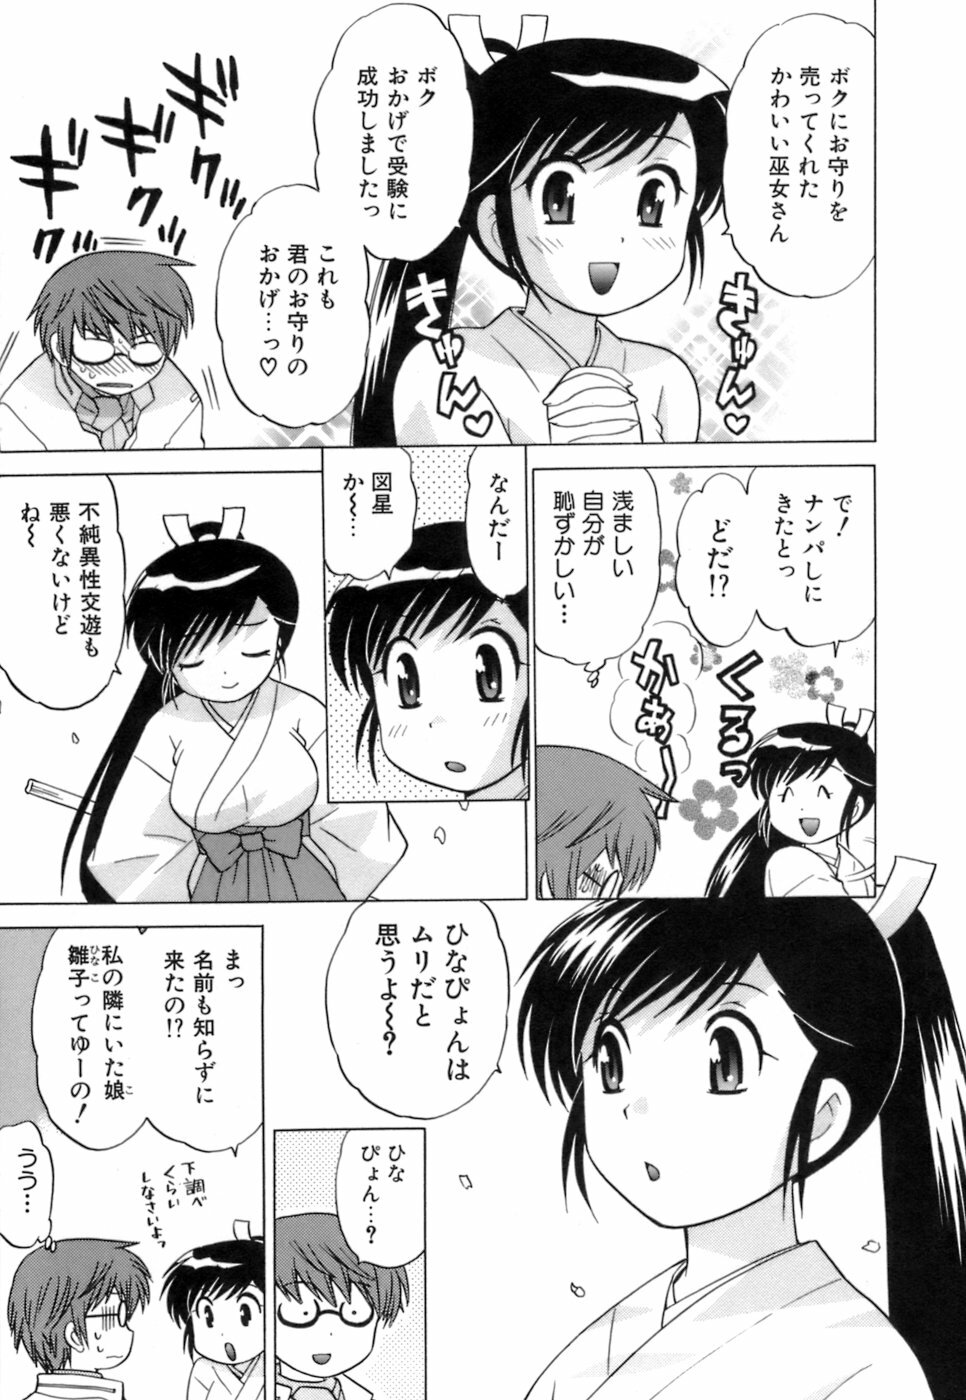 [Kotono Wakako] Miko Moe 1 page 15 full